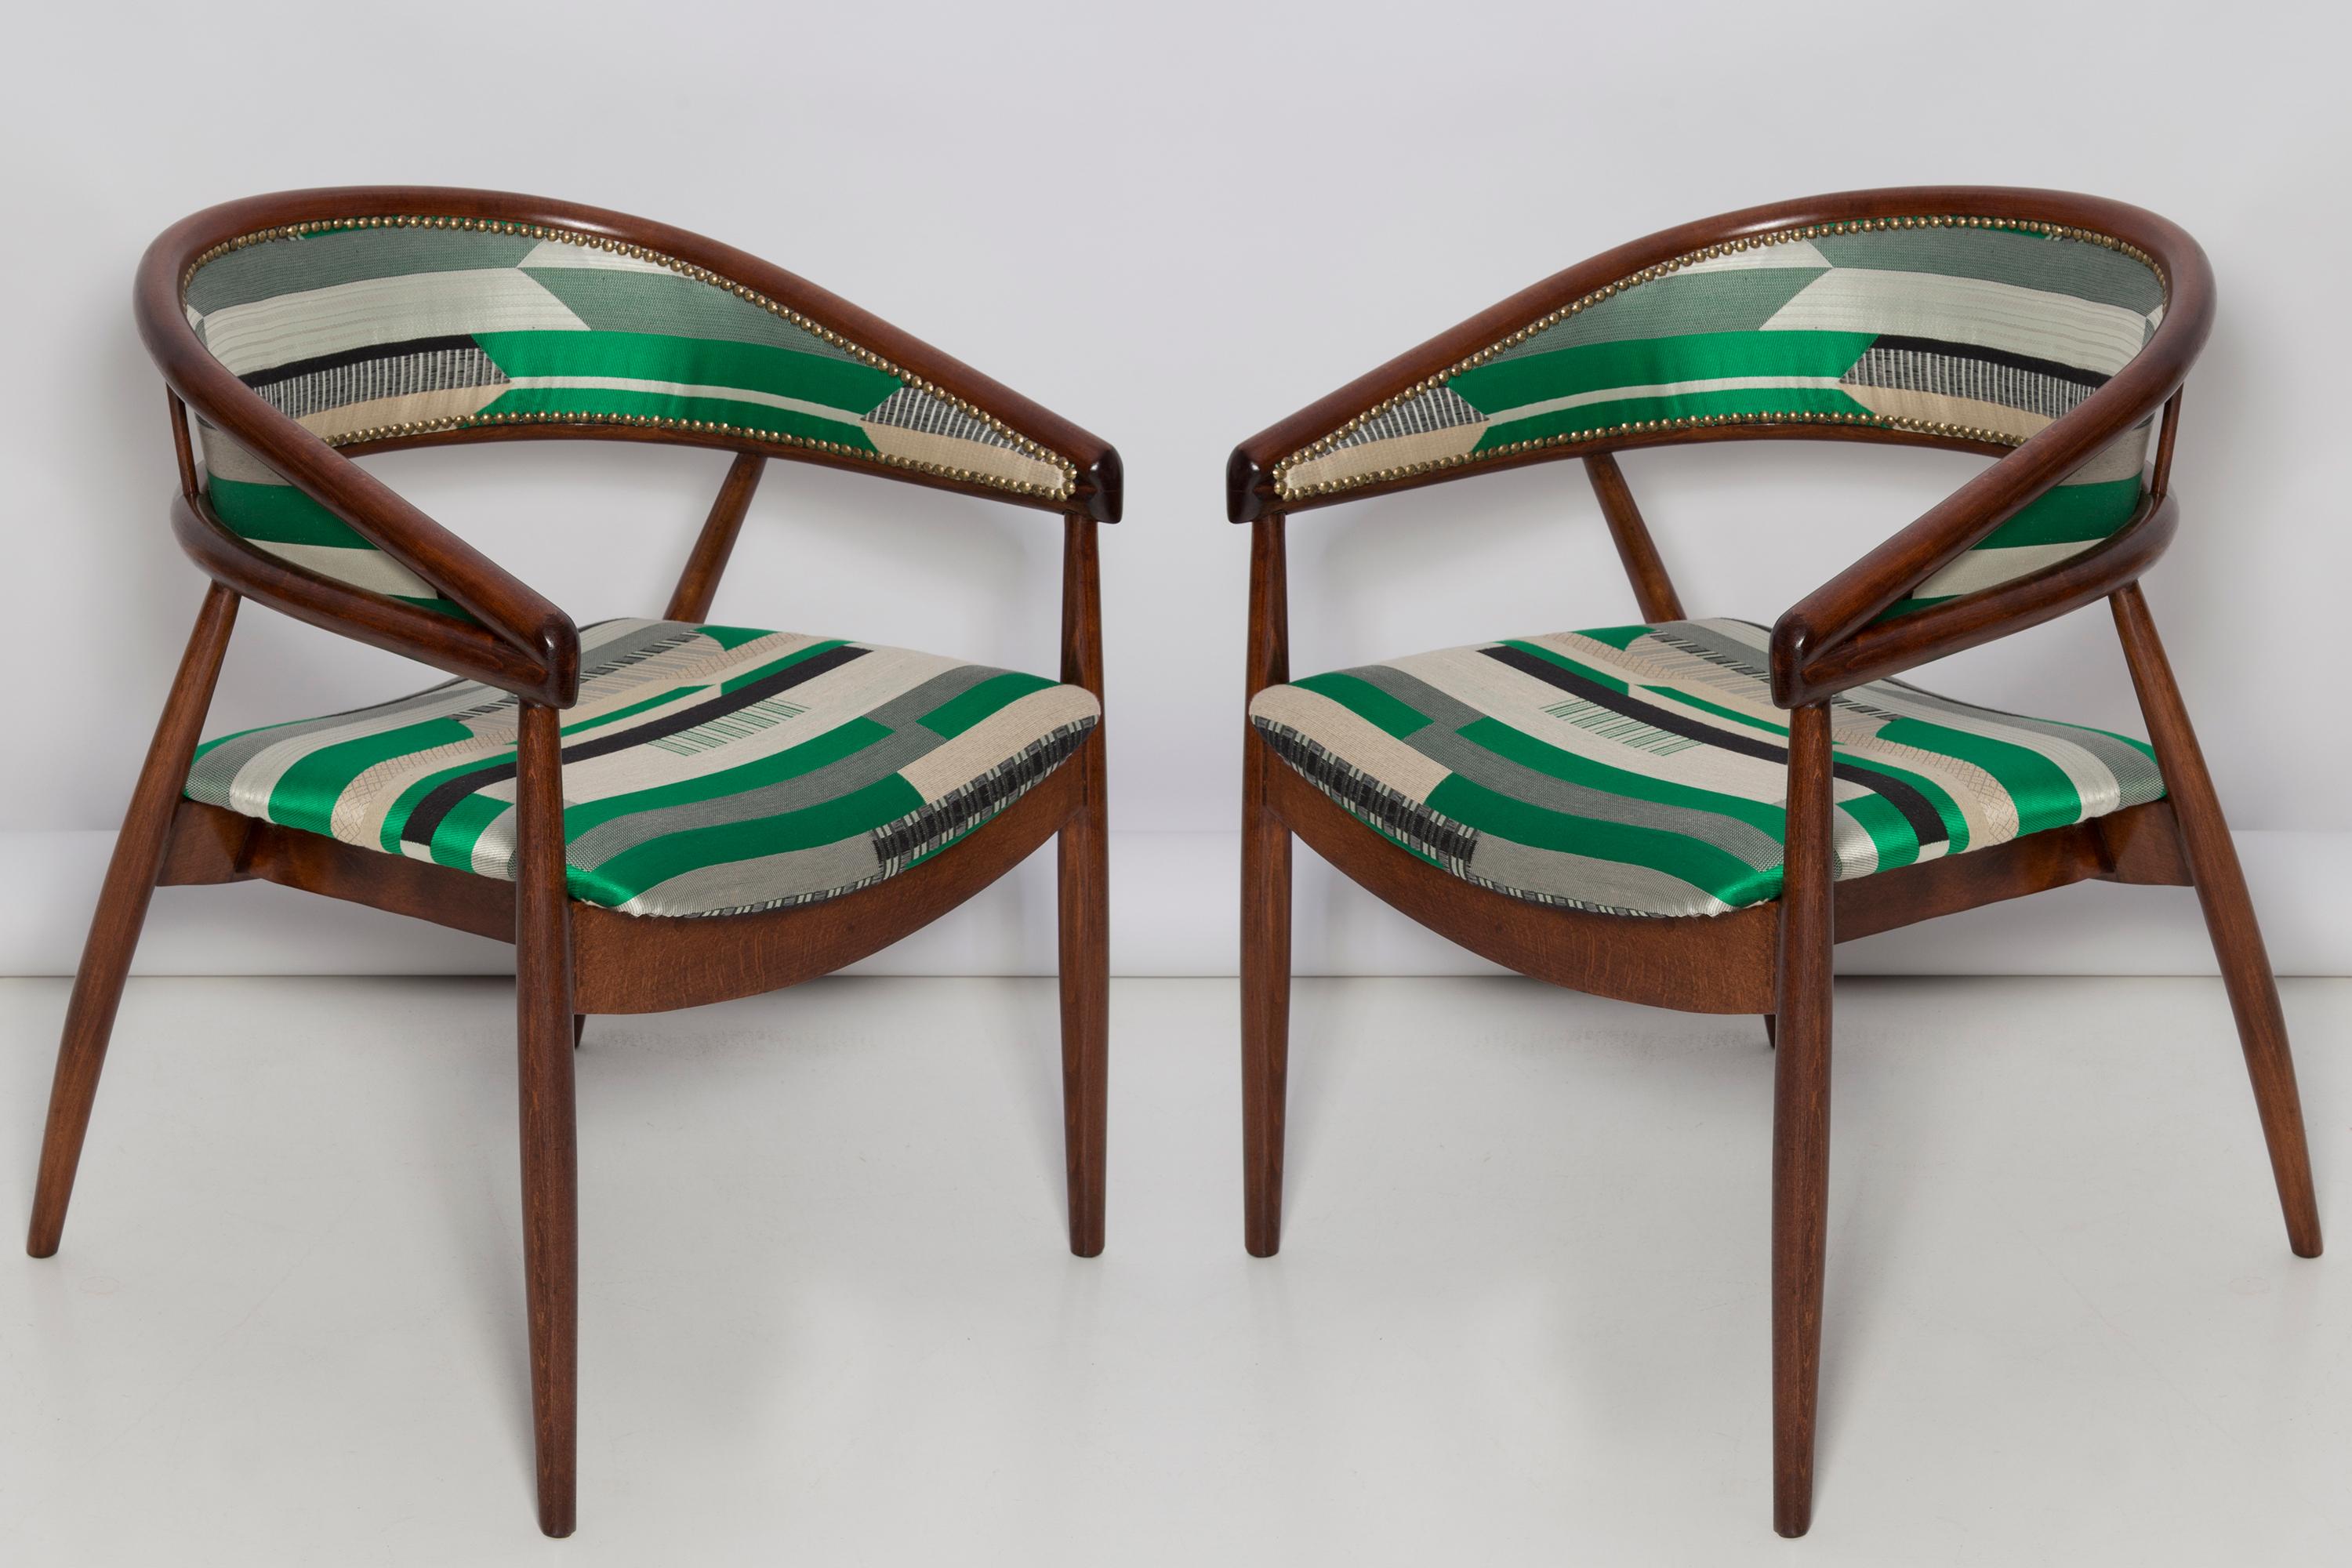 Fauteuil Radomsko B-3300, vers 1955. Il s'agit de fauteuils très confortables fabriqués dans les années 1960. Les fauteuils sont en bois courbé. 
Produit et conçu en Pologne, en Europe. 

Très unique, confortable et beau. Parfait pour les intérieurs